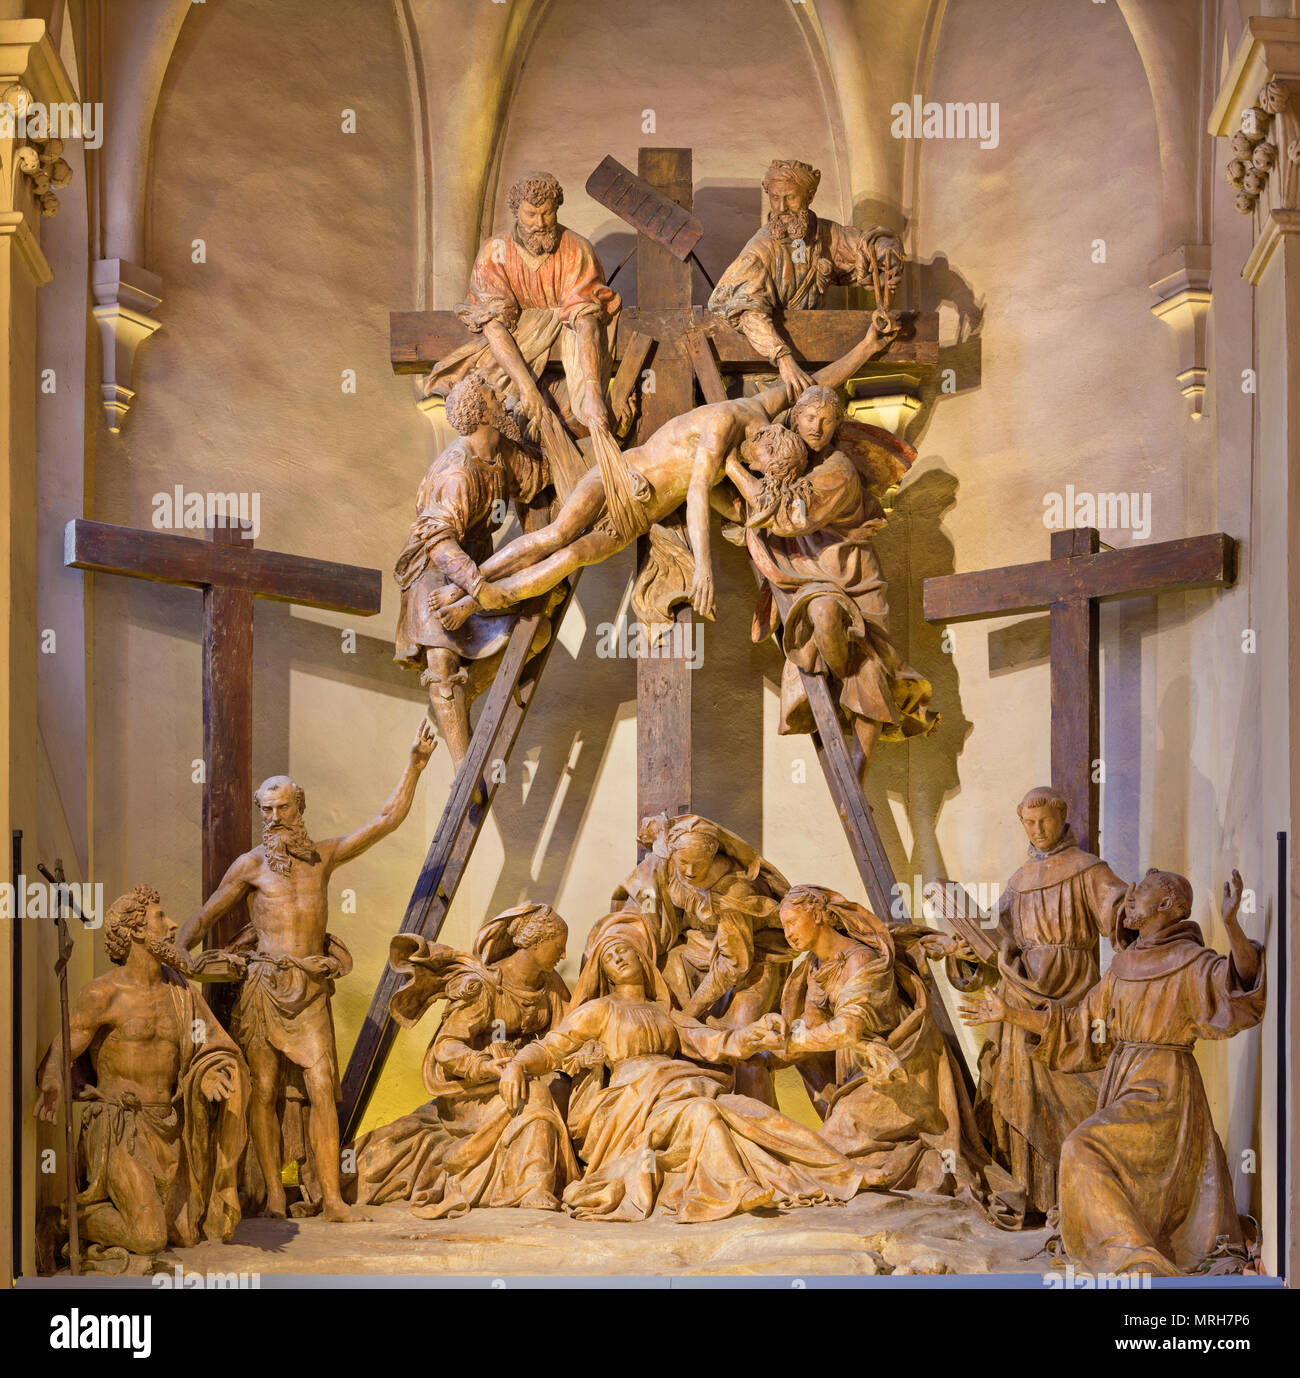 REGGIO EMILIA, Italien - 14 April, 2018: Die skulpturengruppe die Abscheidung des Kreuzes in der Kirche Chiesa di San Francesco von Antonio Begarelli. Stockfoto